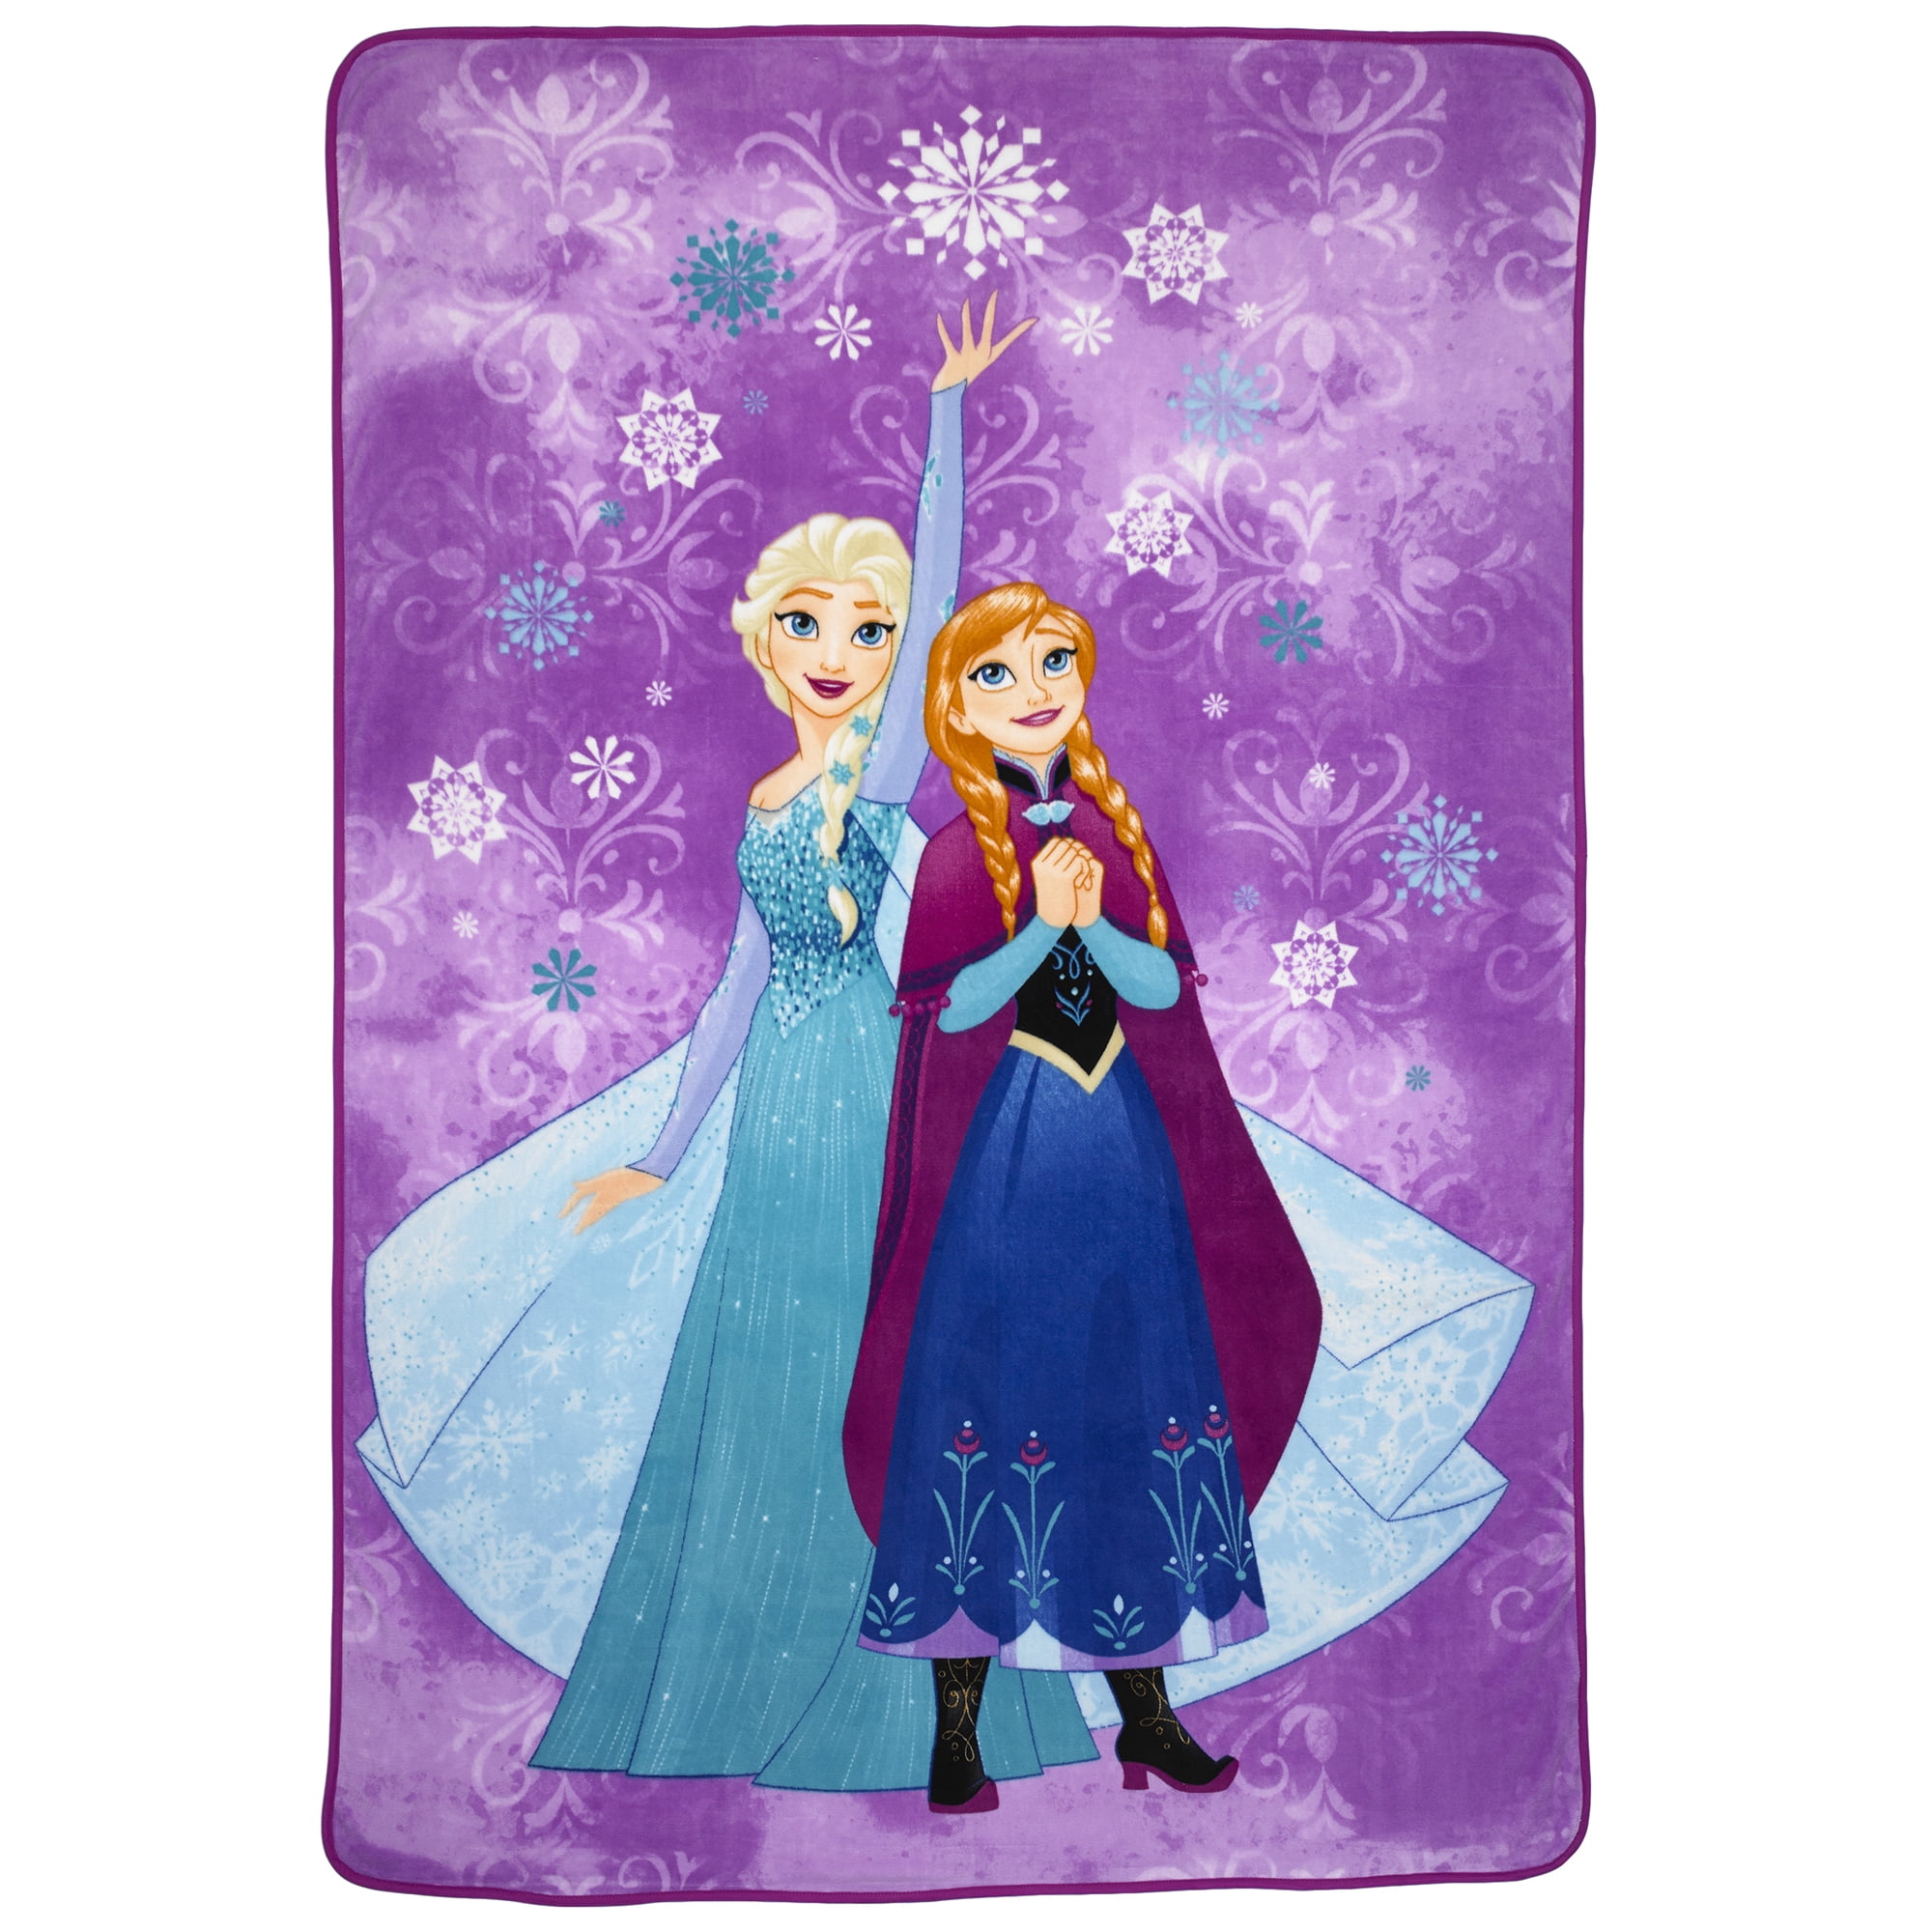 NWT Disney Frozen Anna & Elsa 50" X 60" Plush Throw Blanket $49.99 #17415-205 